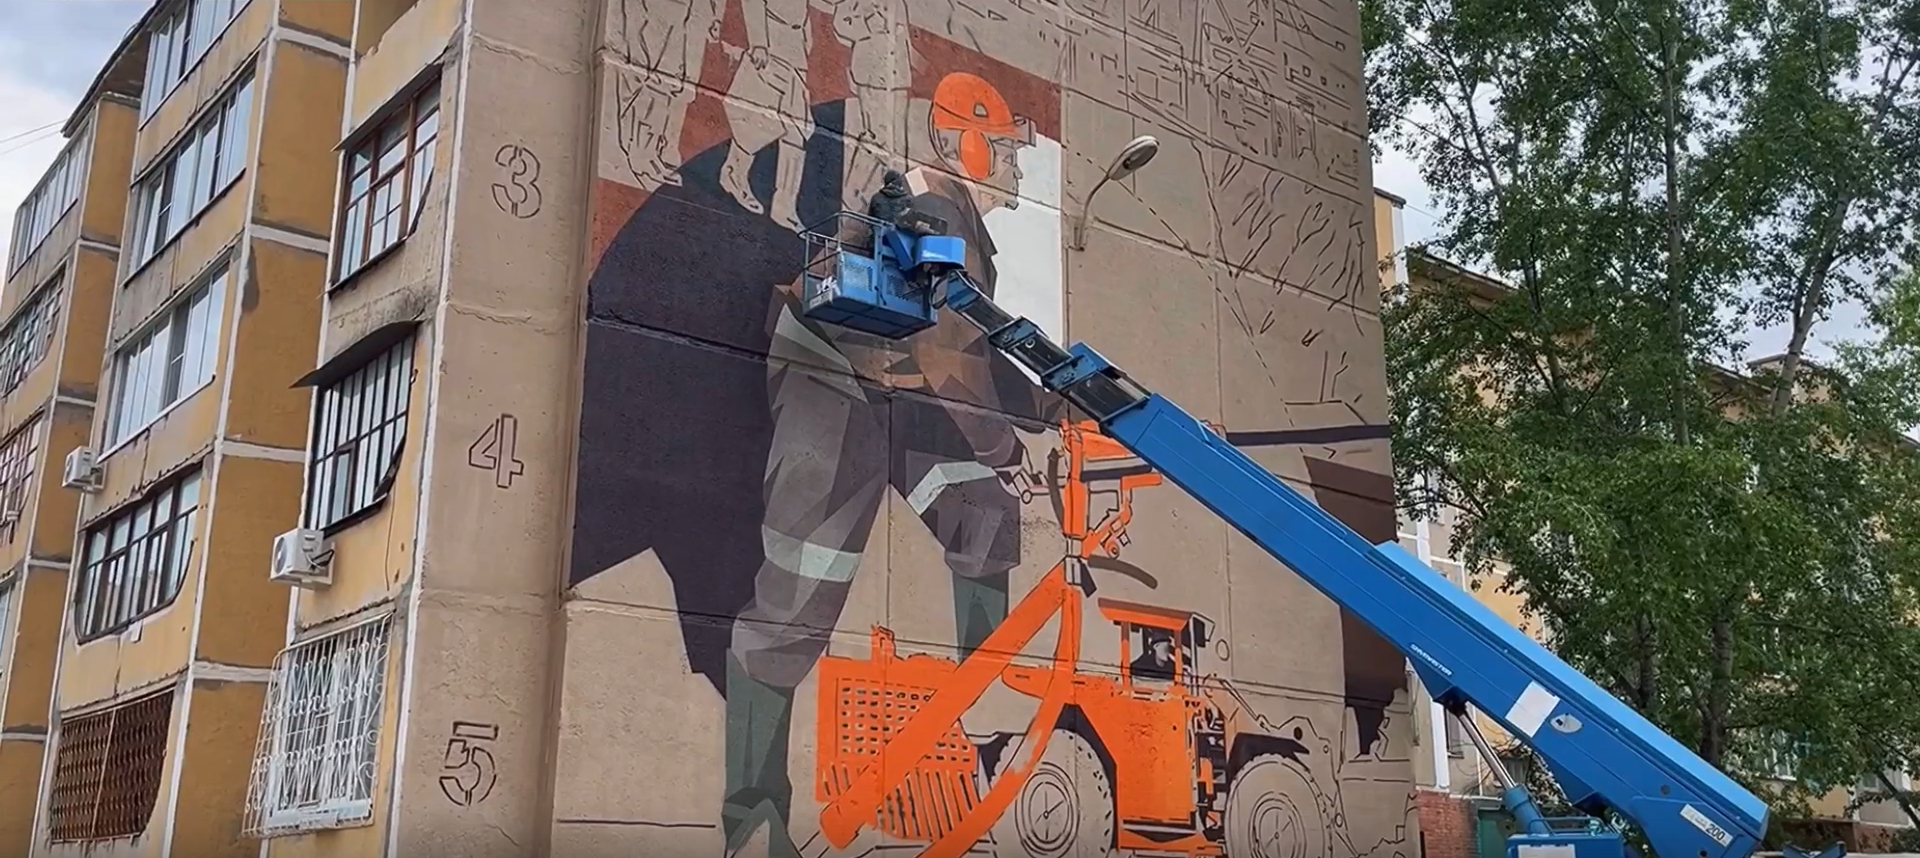 Три мурала нарисуют художники на жилых домах Краснокаменска